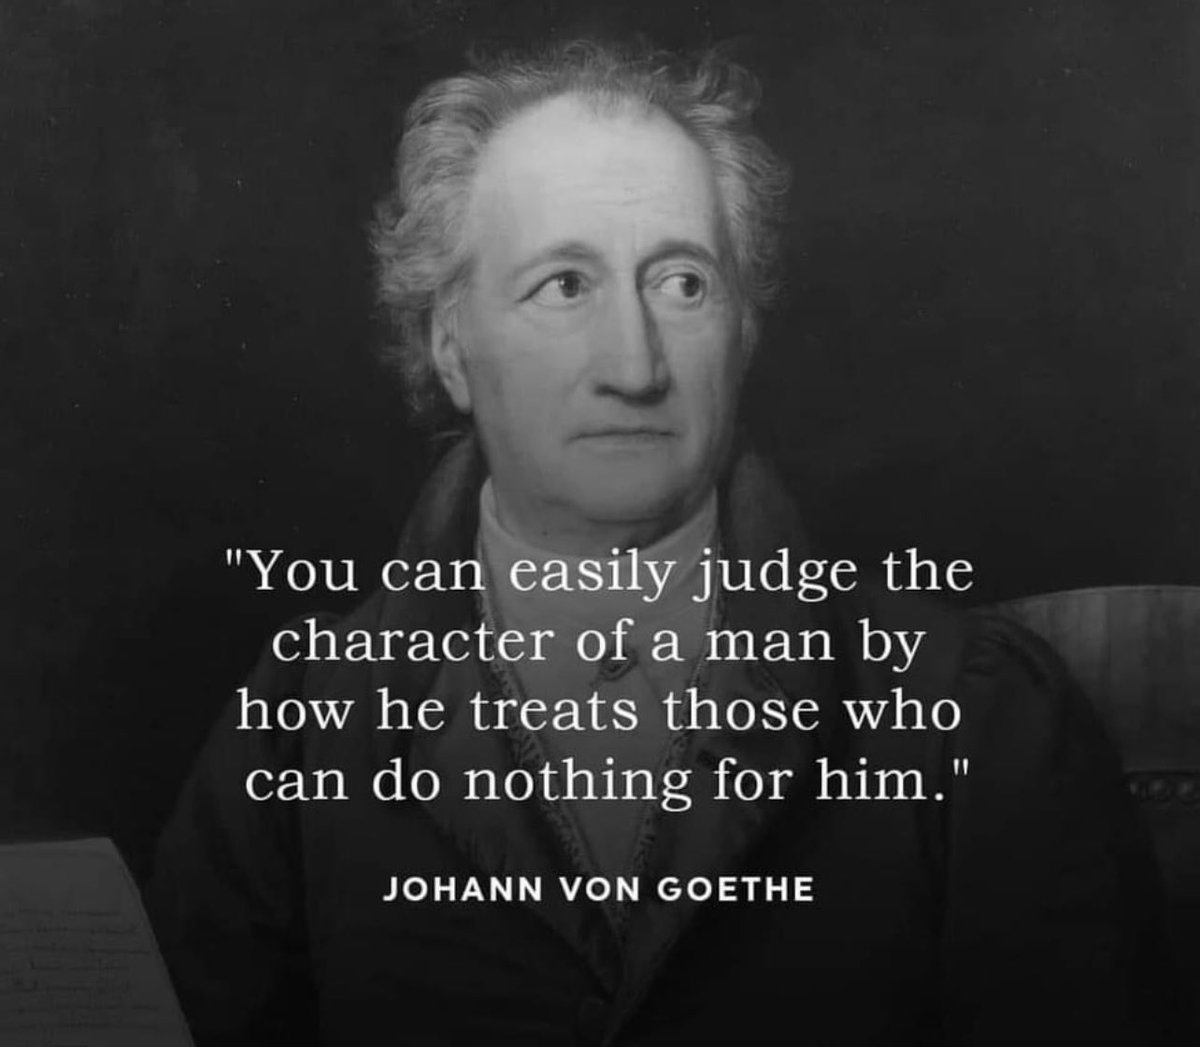 🌎🕊️#SaturdayThoughts by one of my favorite philosophers #Goethe #StandWithHumanity 🌎❤️#LeaveNoneBehind
@EduCannotWait